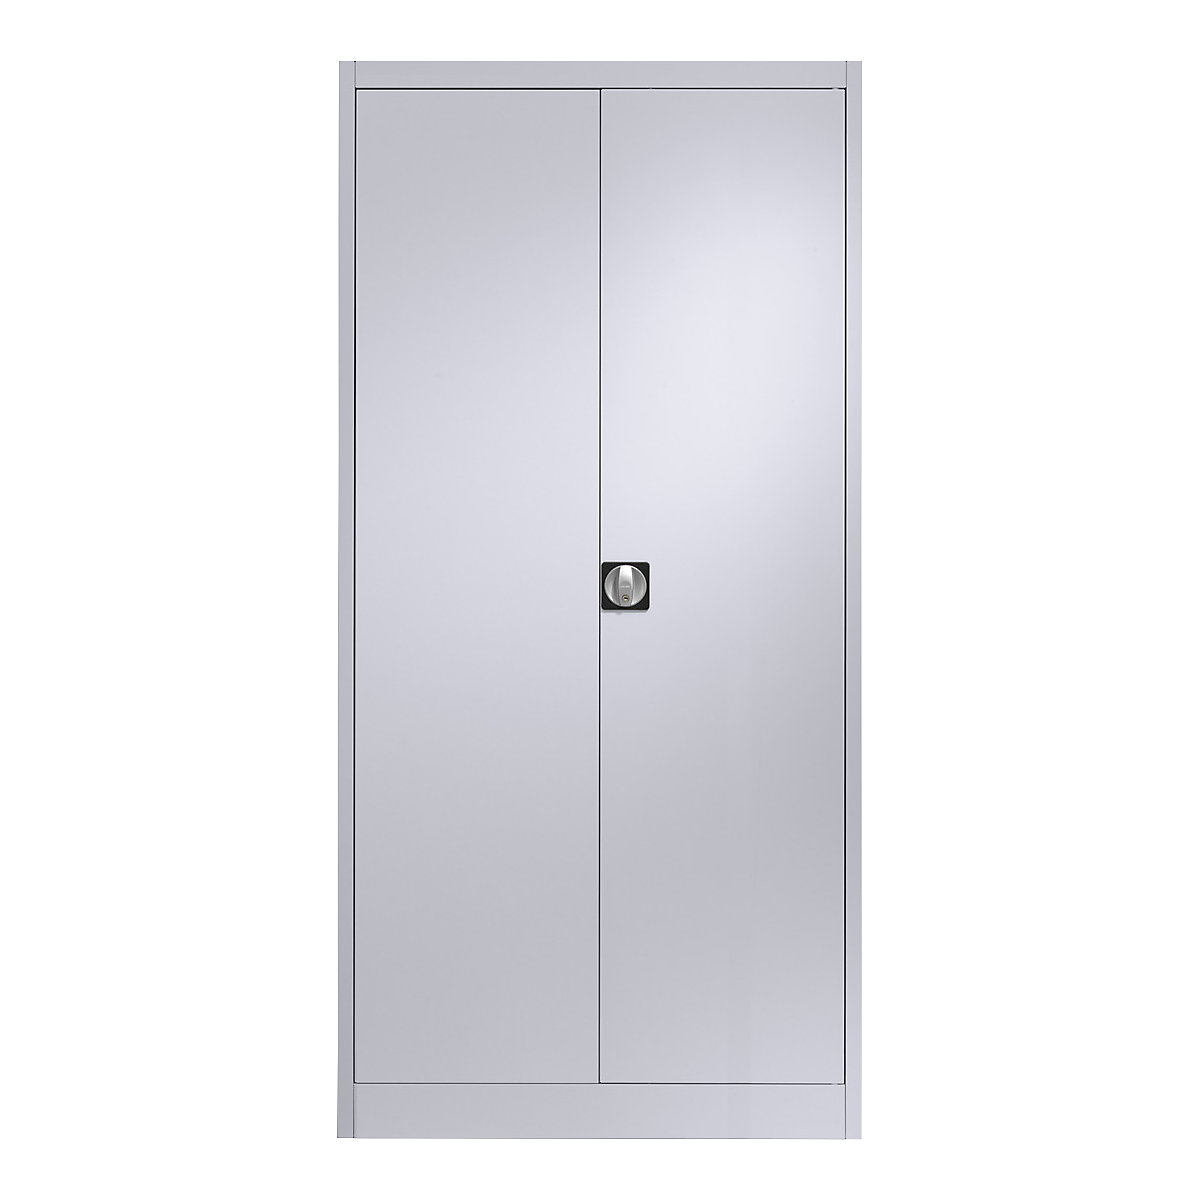 Ocelová skříň s otočnými dveřmi – mauser